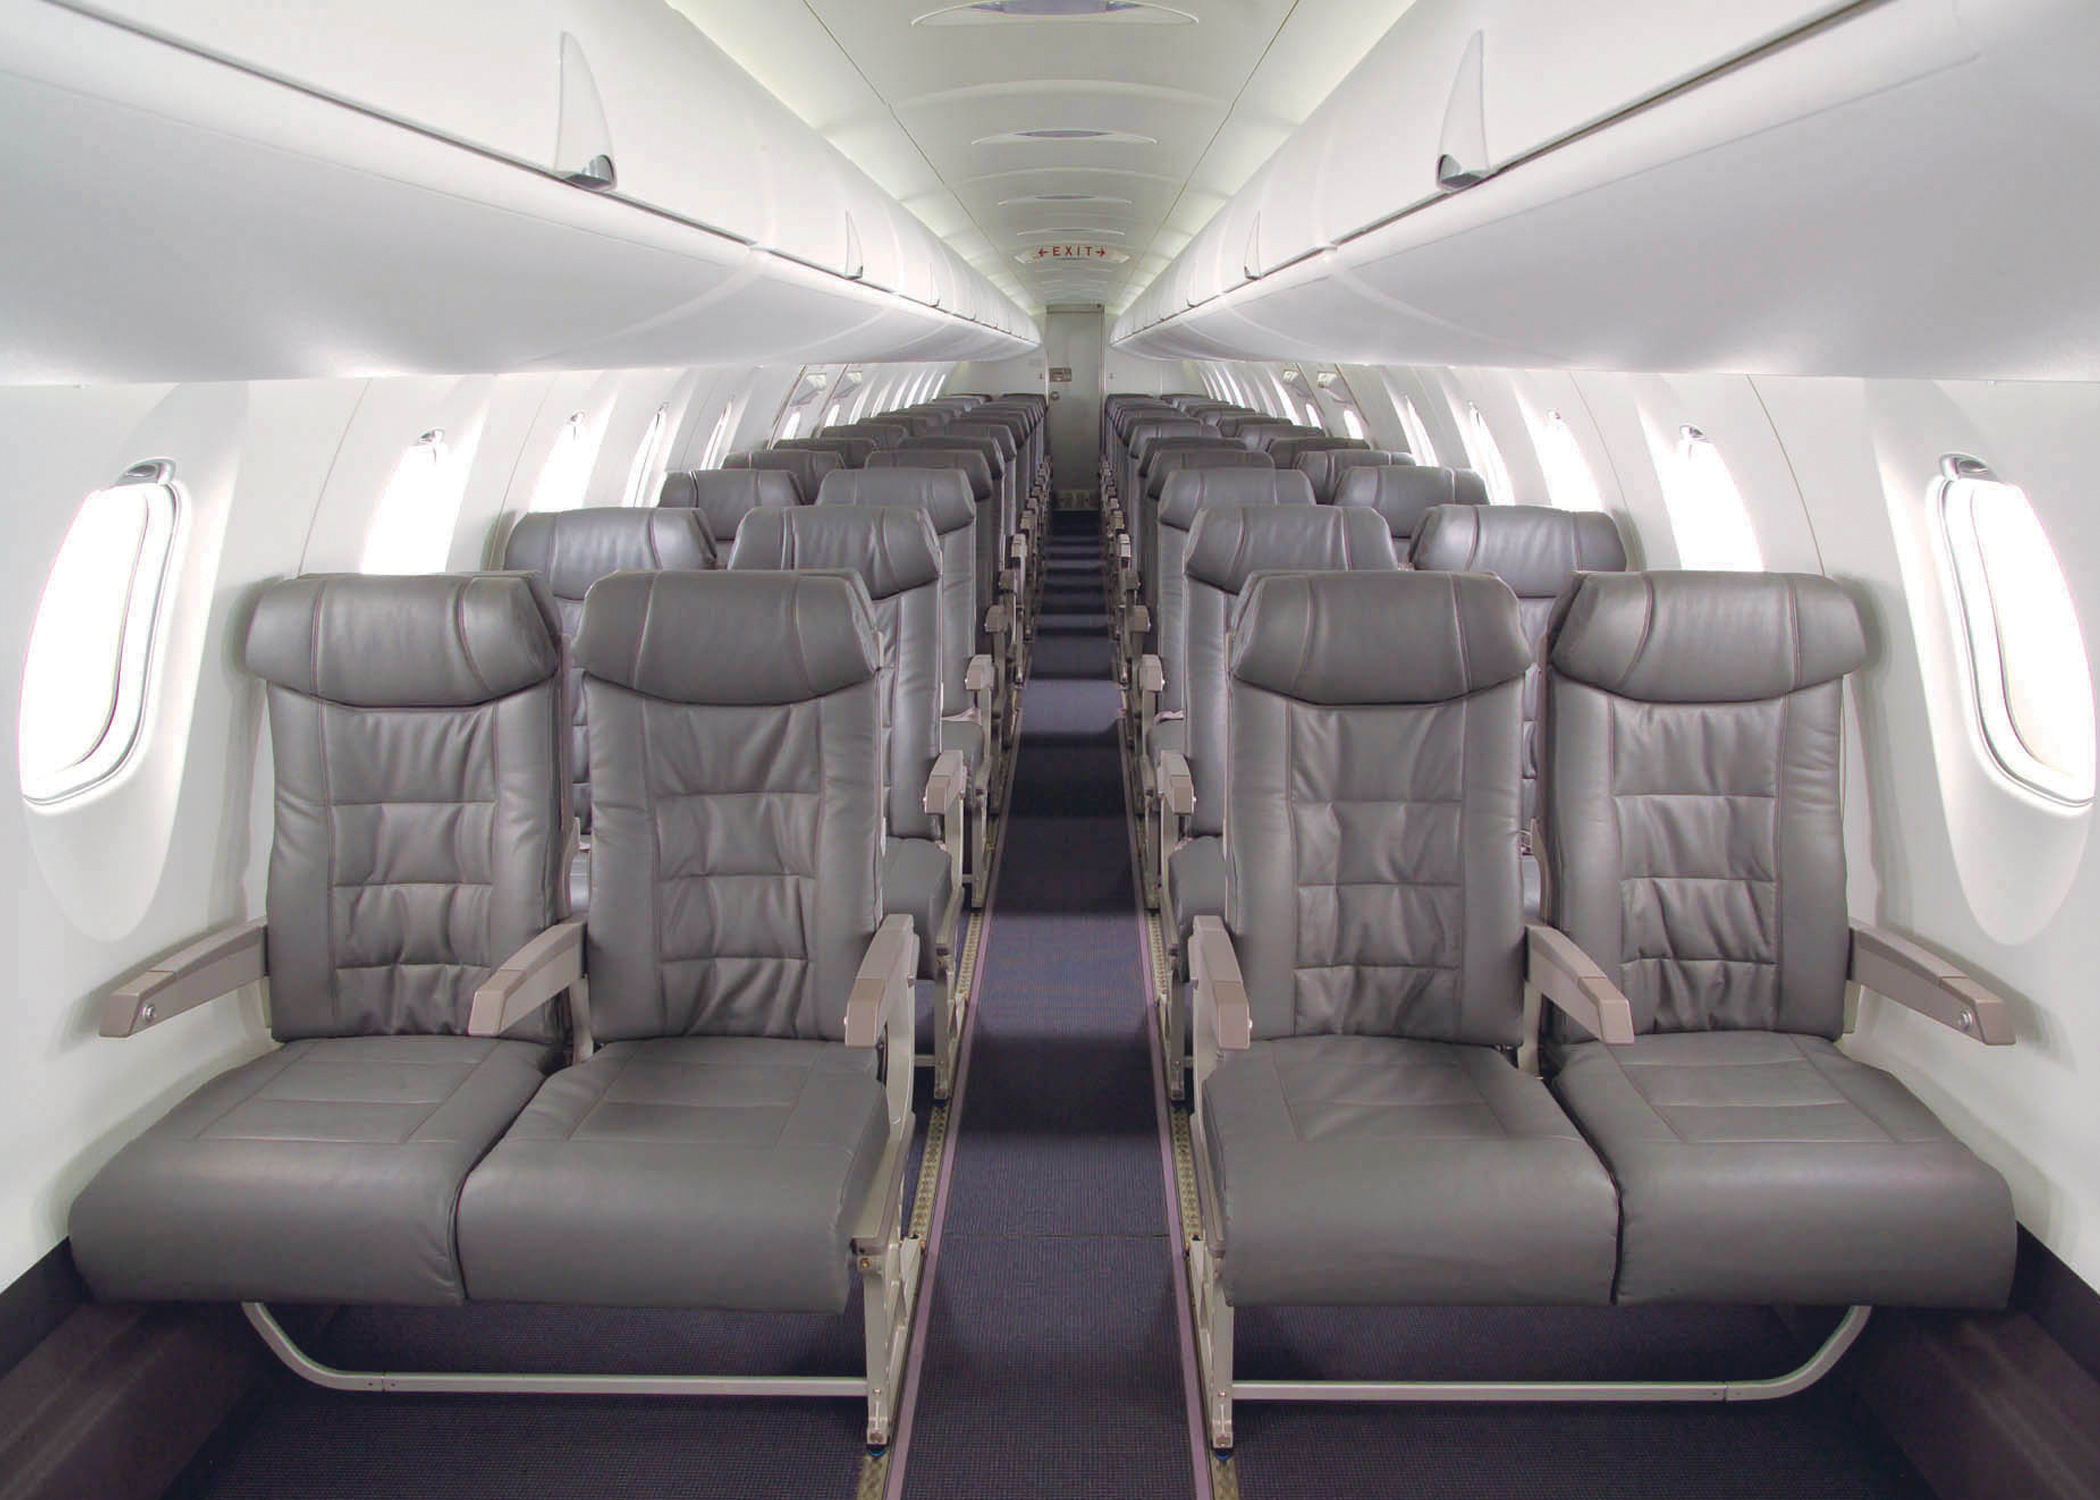 Bombardier CRJ 200 interior cabin